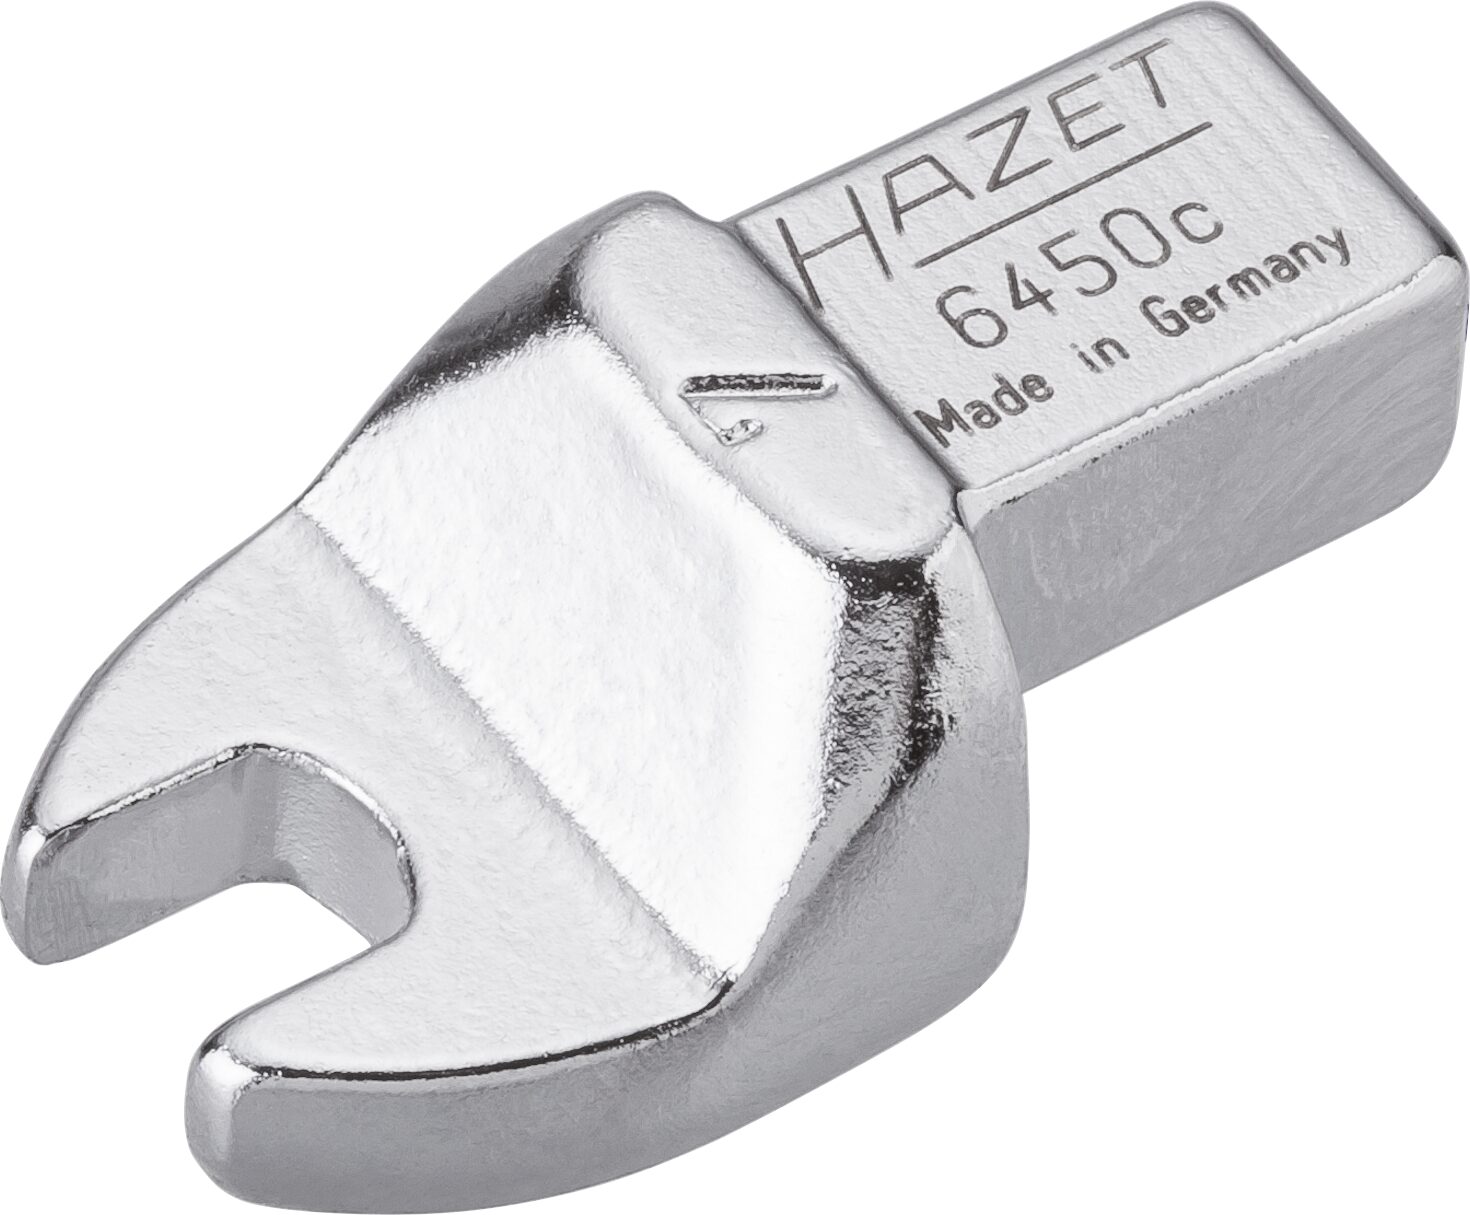 HAZET Einsteck-Maulschlüssel 6450C-7 · Einsteck-Vierkant 9 x 12 mm · Außen Sechskant Profil · 7 mm